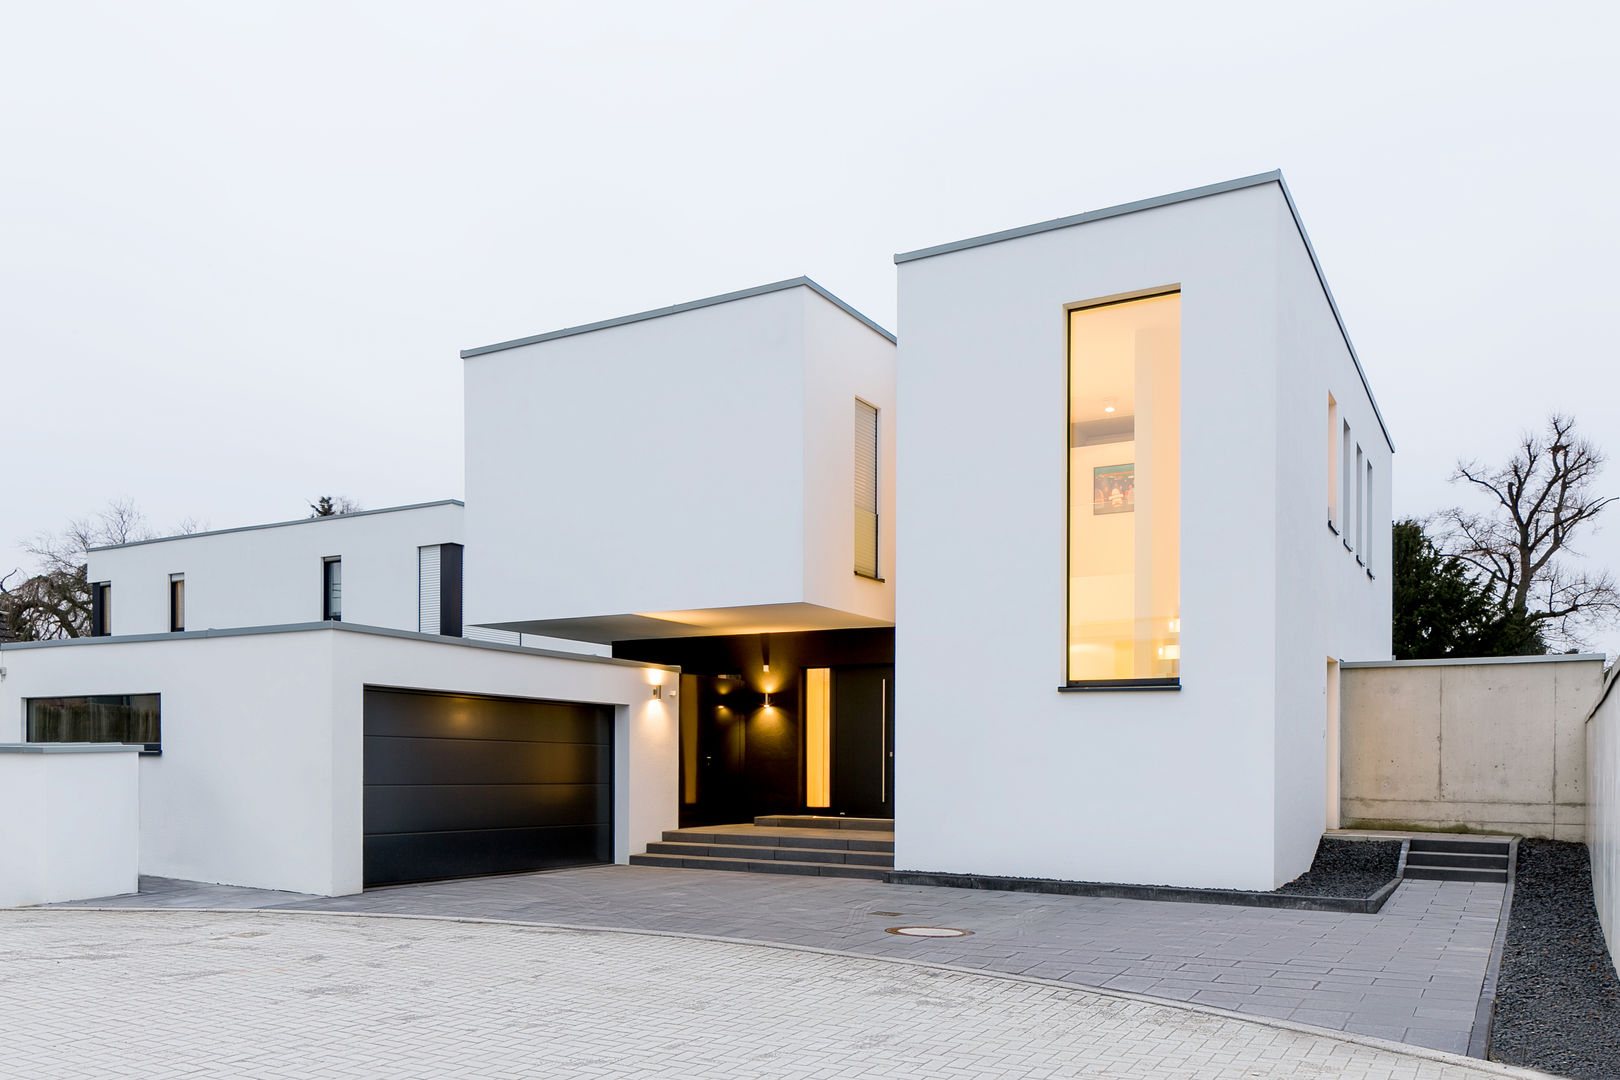 Haus H, Ferreira | Verfürth Architekten Ferreira | Verfürth Architekten Moderne huizen